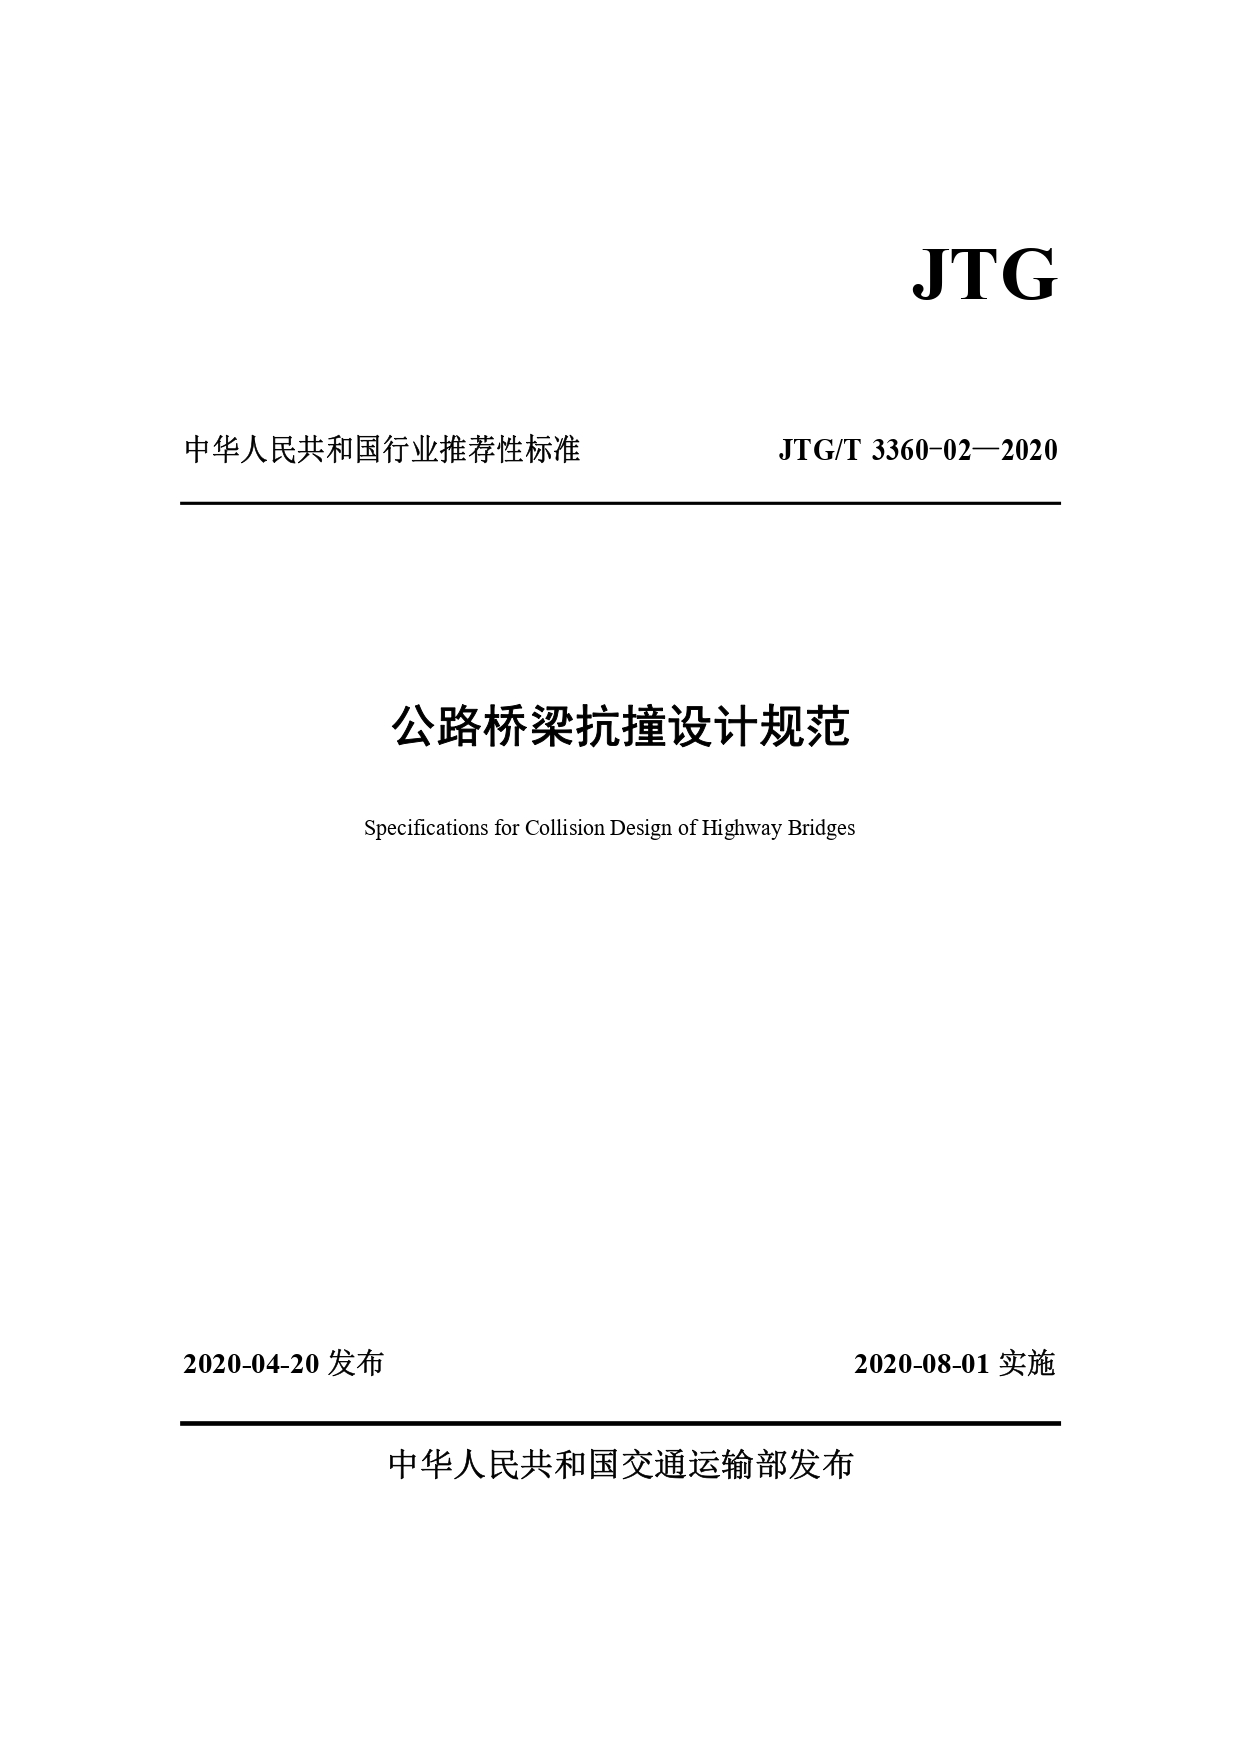 《公路桥梁抗撞设计规范》(JTGT 3360-02—2020)